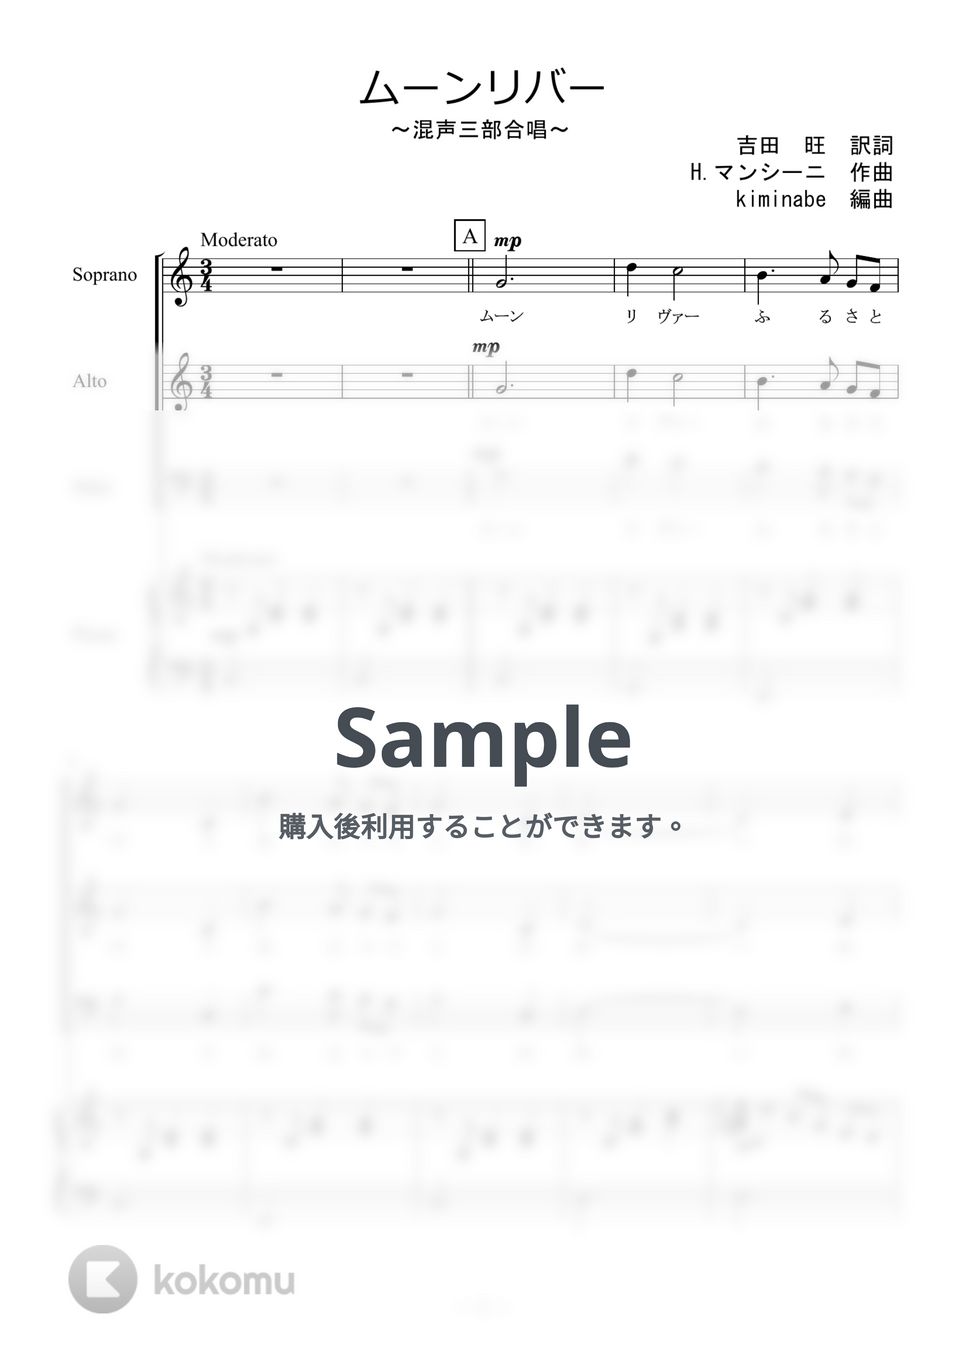 ヘンリー・マンシーニ - ムーンリバー (混声三部合唱) by kiminabe